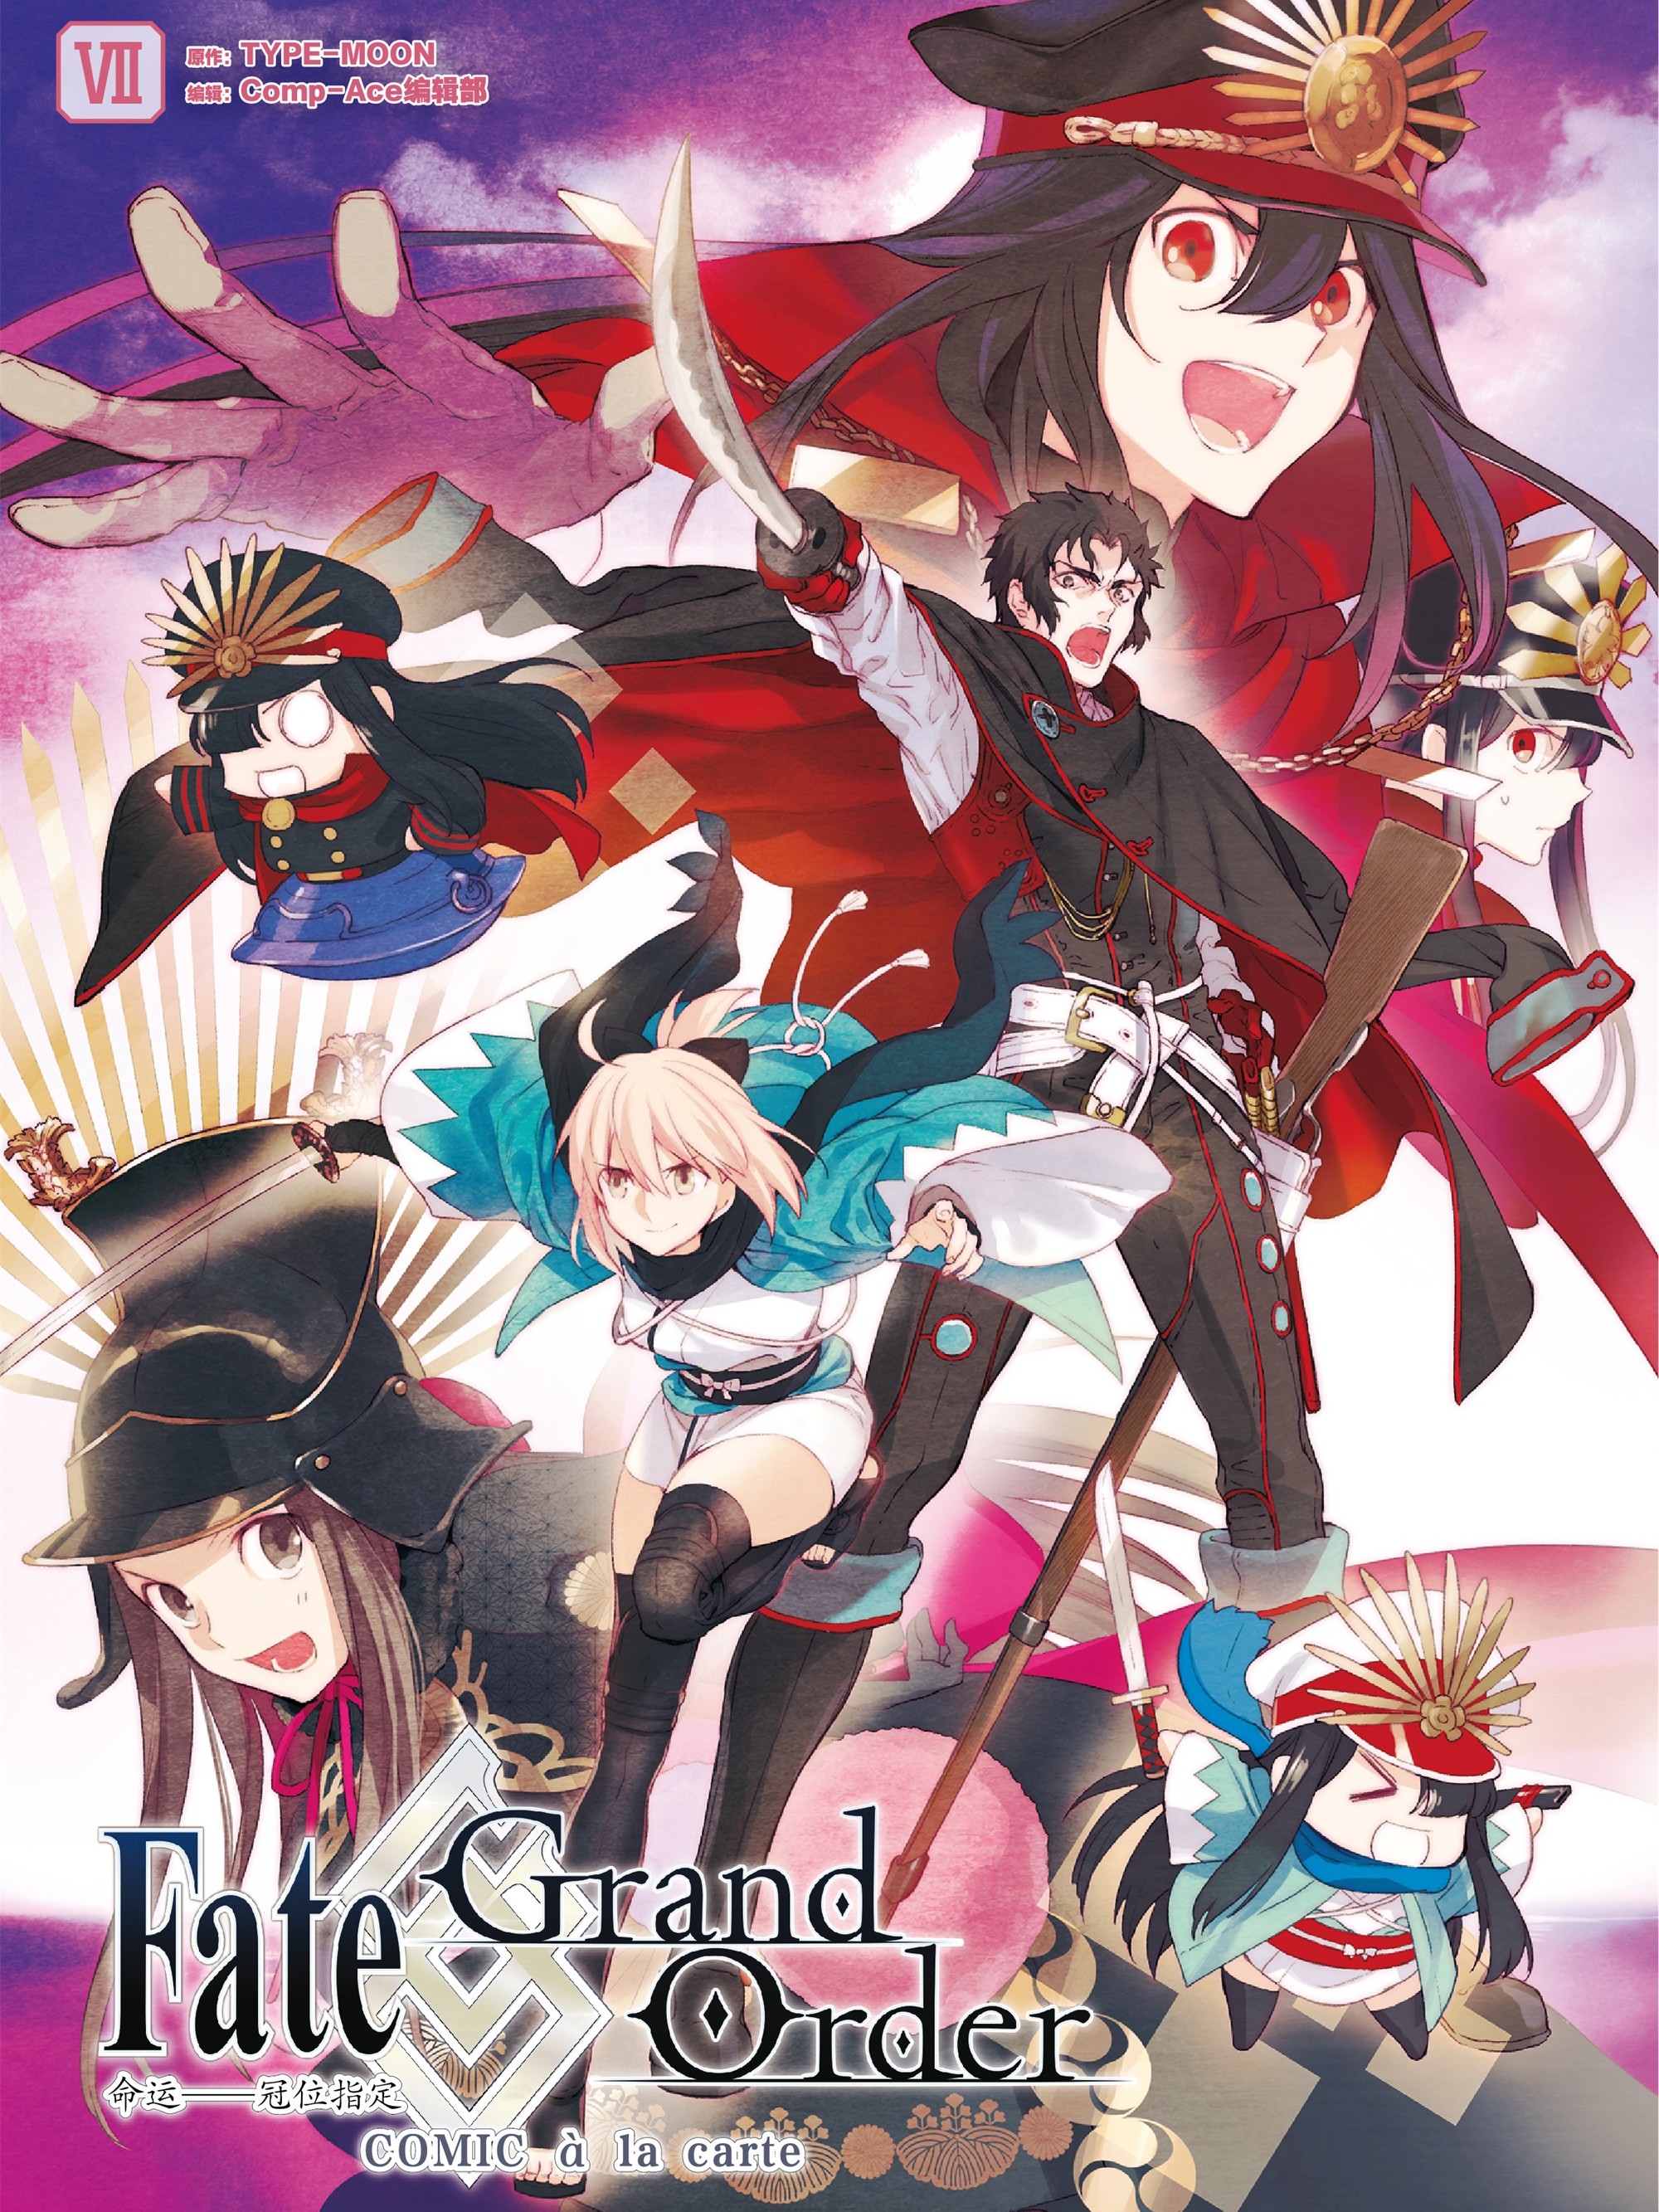 Fate/Grand Order 命运——冠位指定 COMIC à la carte海报